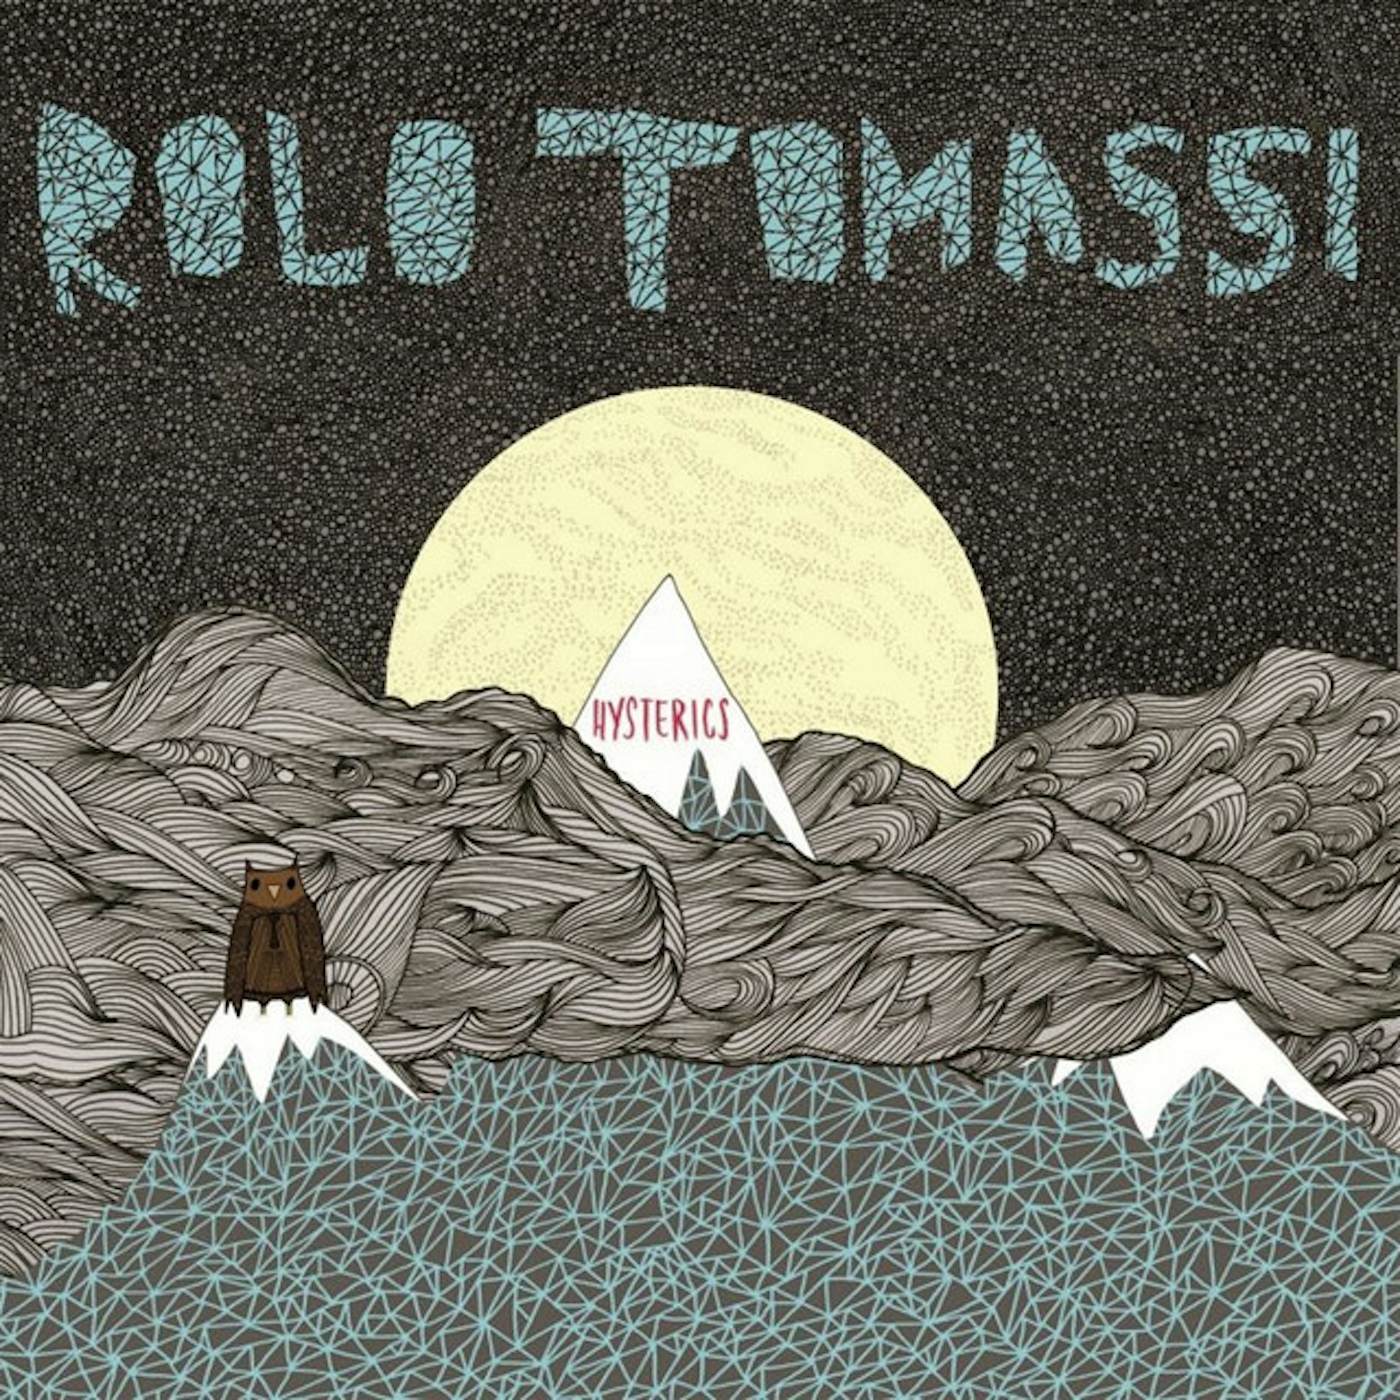 Rolo Tomassi Hysterics Vinyl Record